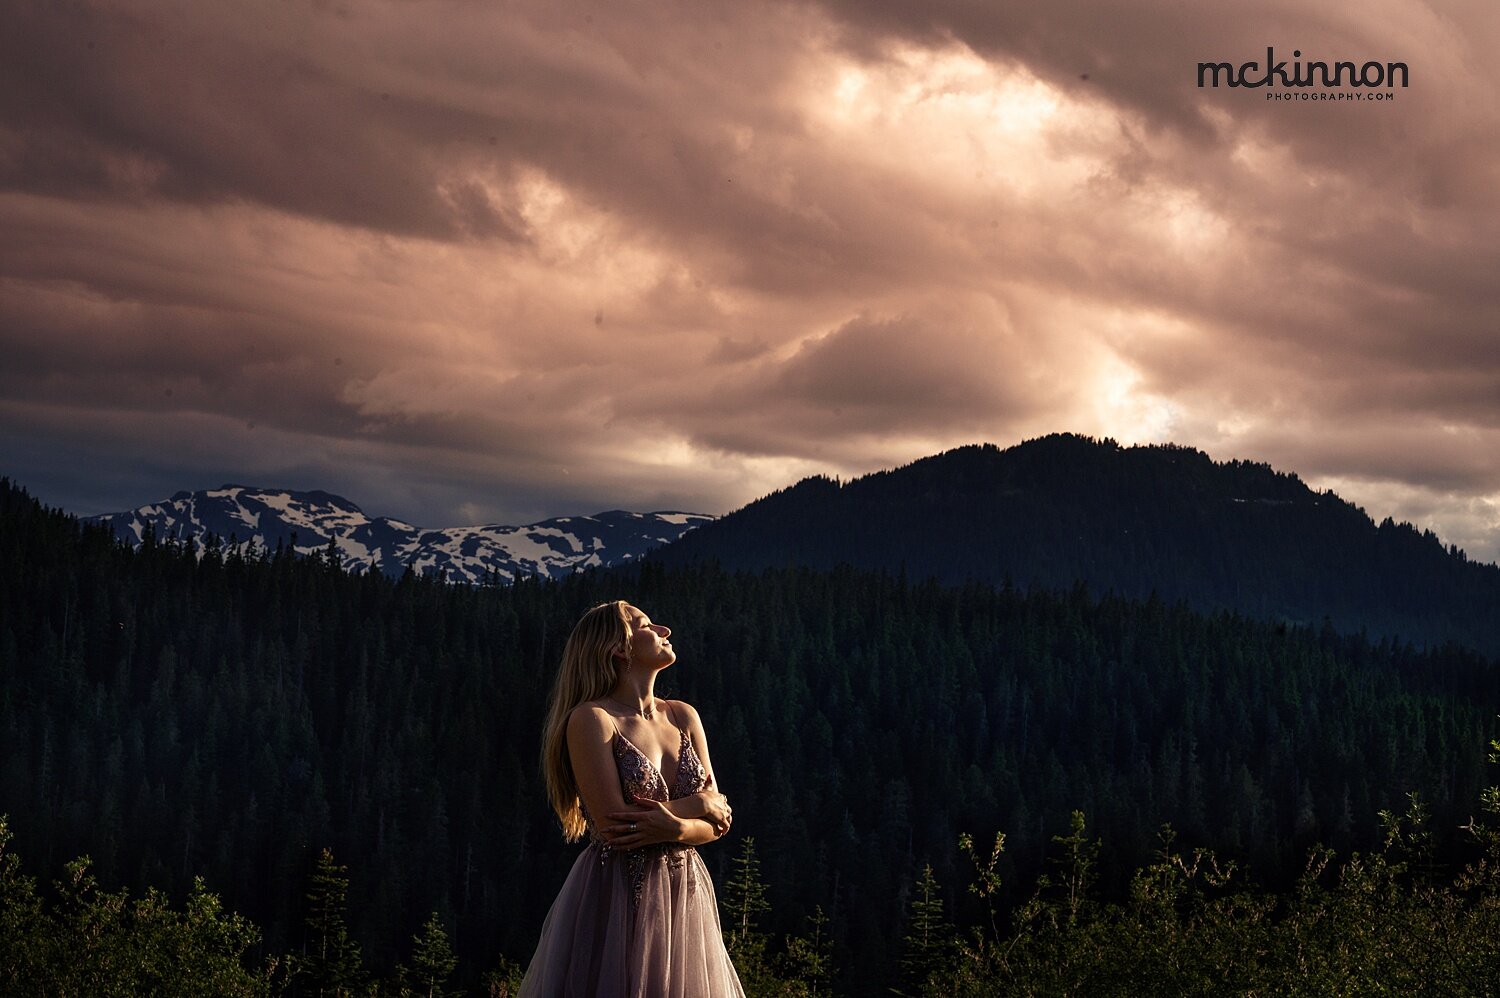 Mount Washington Photographer